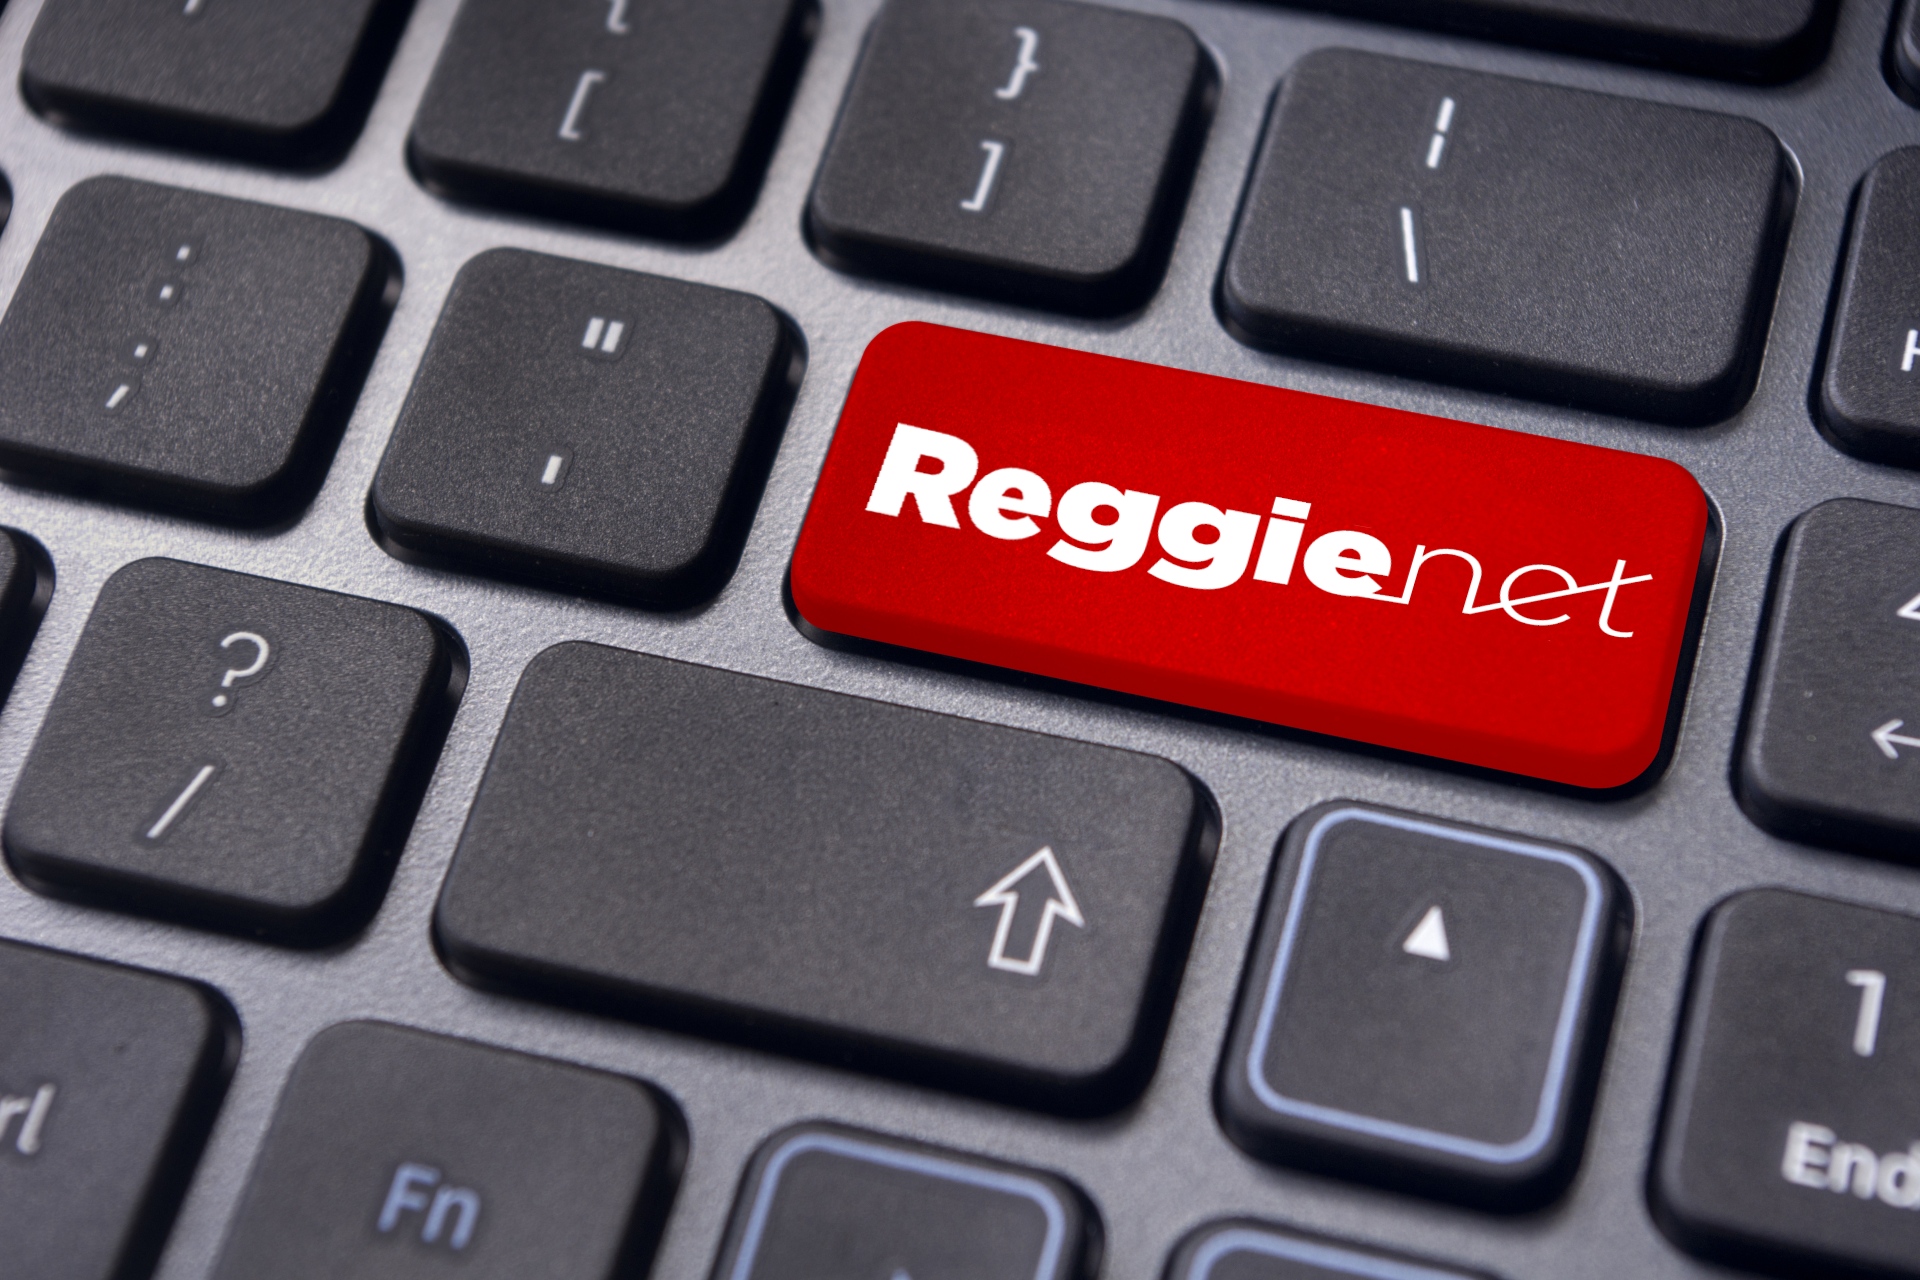 Keyboard with ReggieNet logo